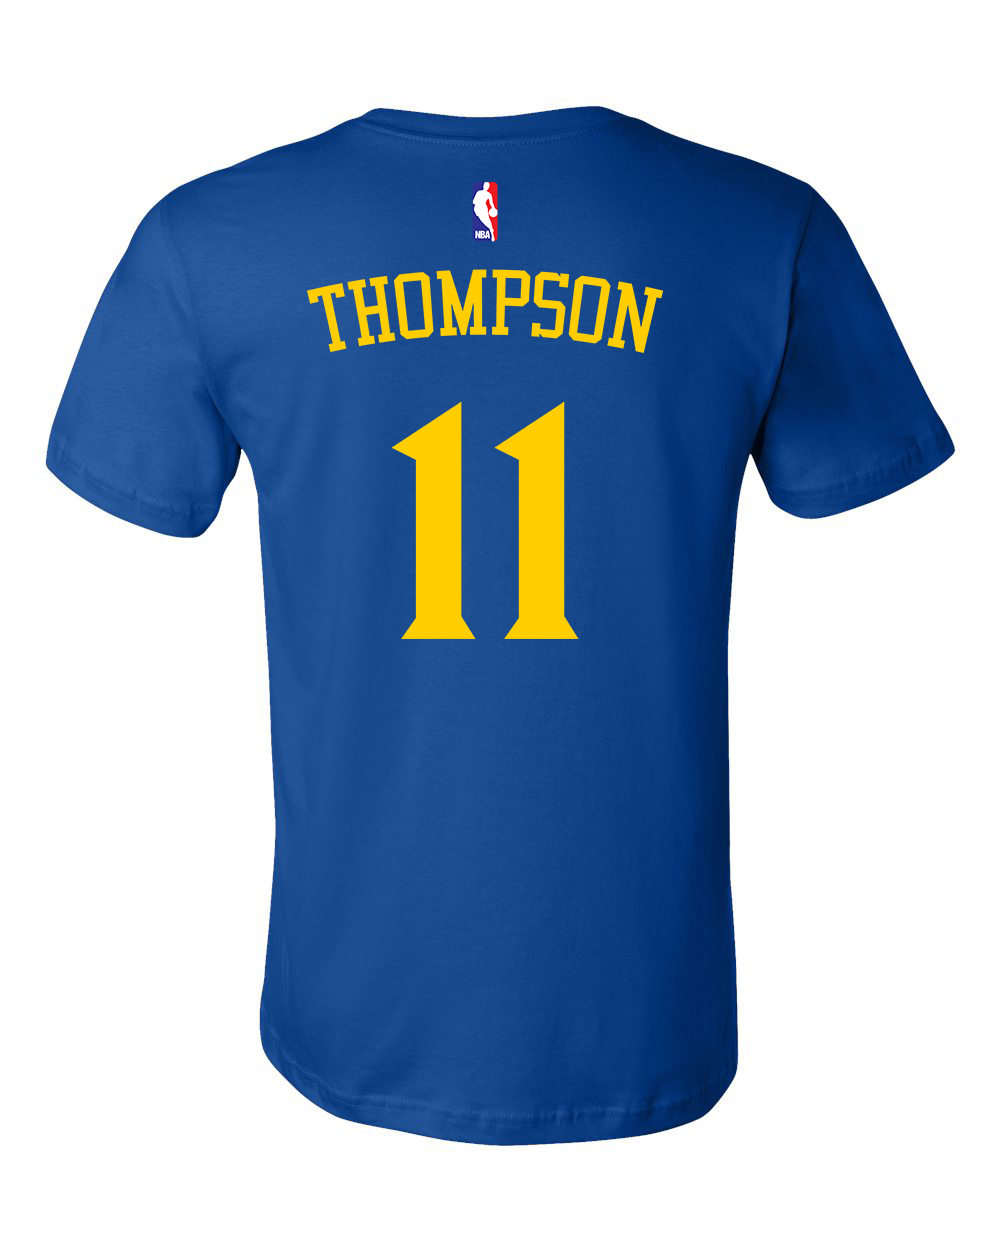 Klay Thompson Golden State Warriors Jerseys, Klay Thompson Shirts, Klay  Thompson Warriors Player Shop